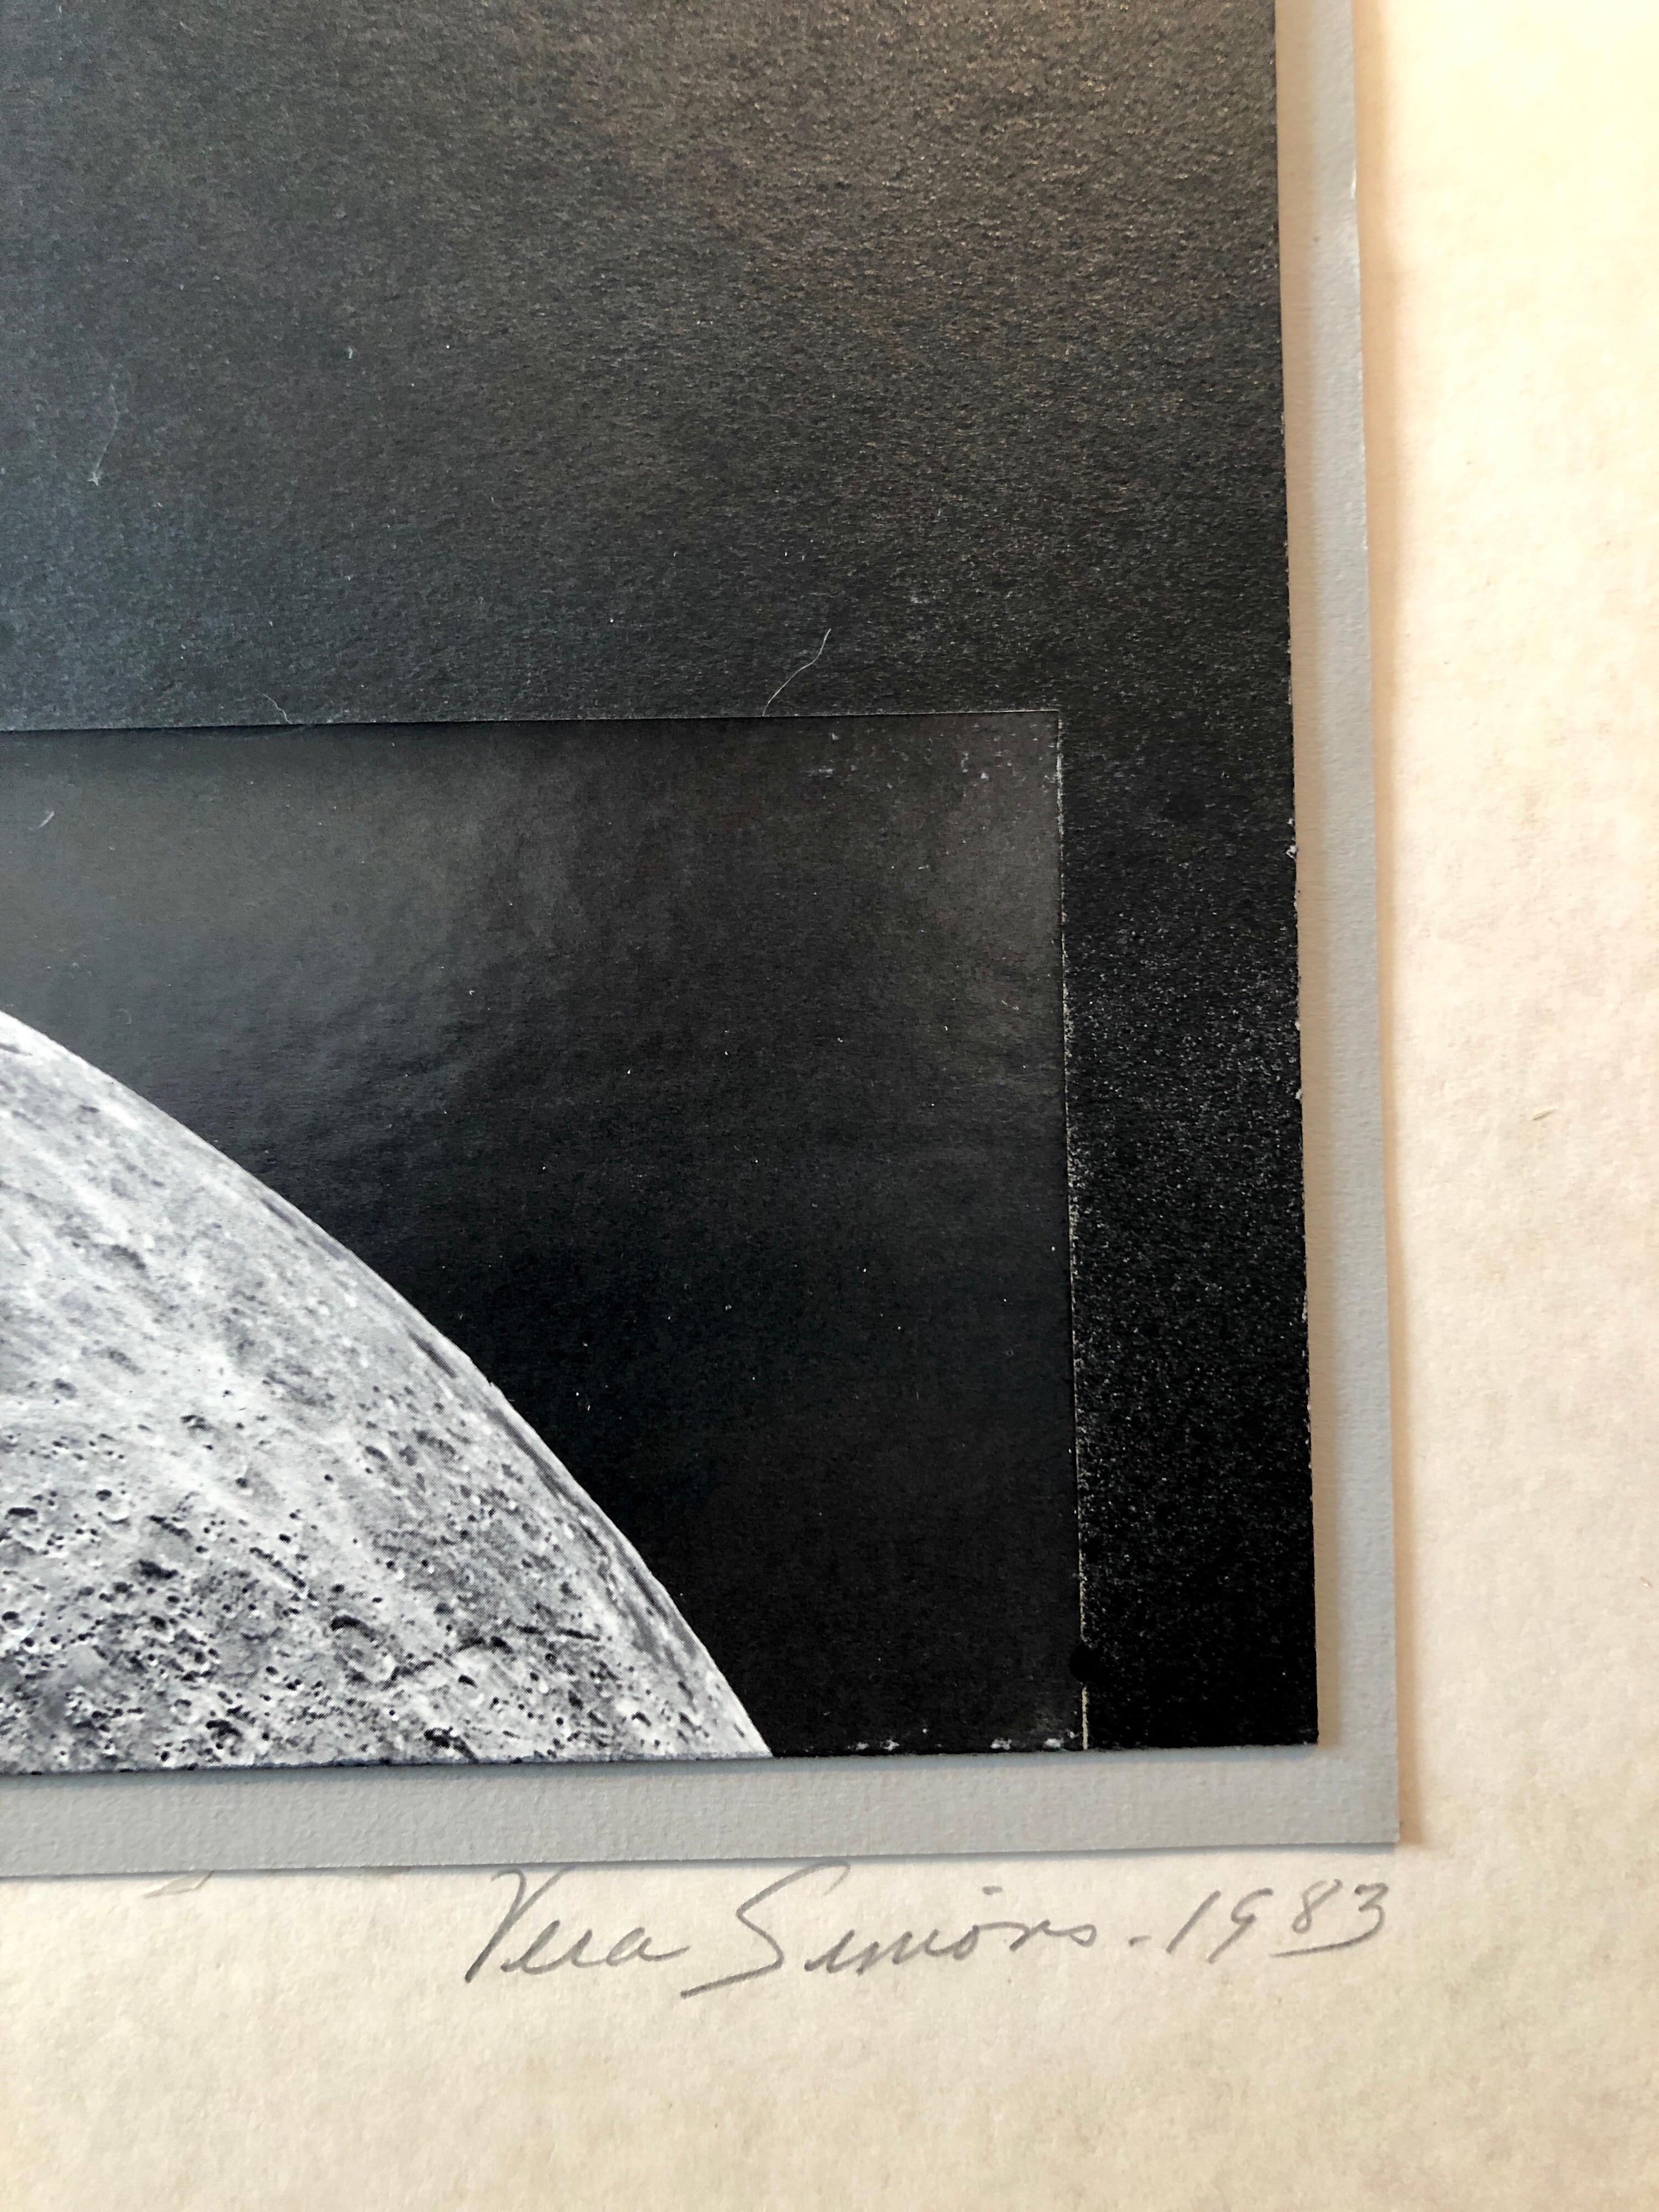 Josias Astronomische Uhrenuhrteiler, Assemblage-Foto, Planeten-Collage-Foto – Photograph von Vera Simons